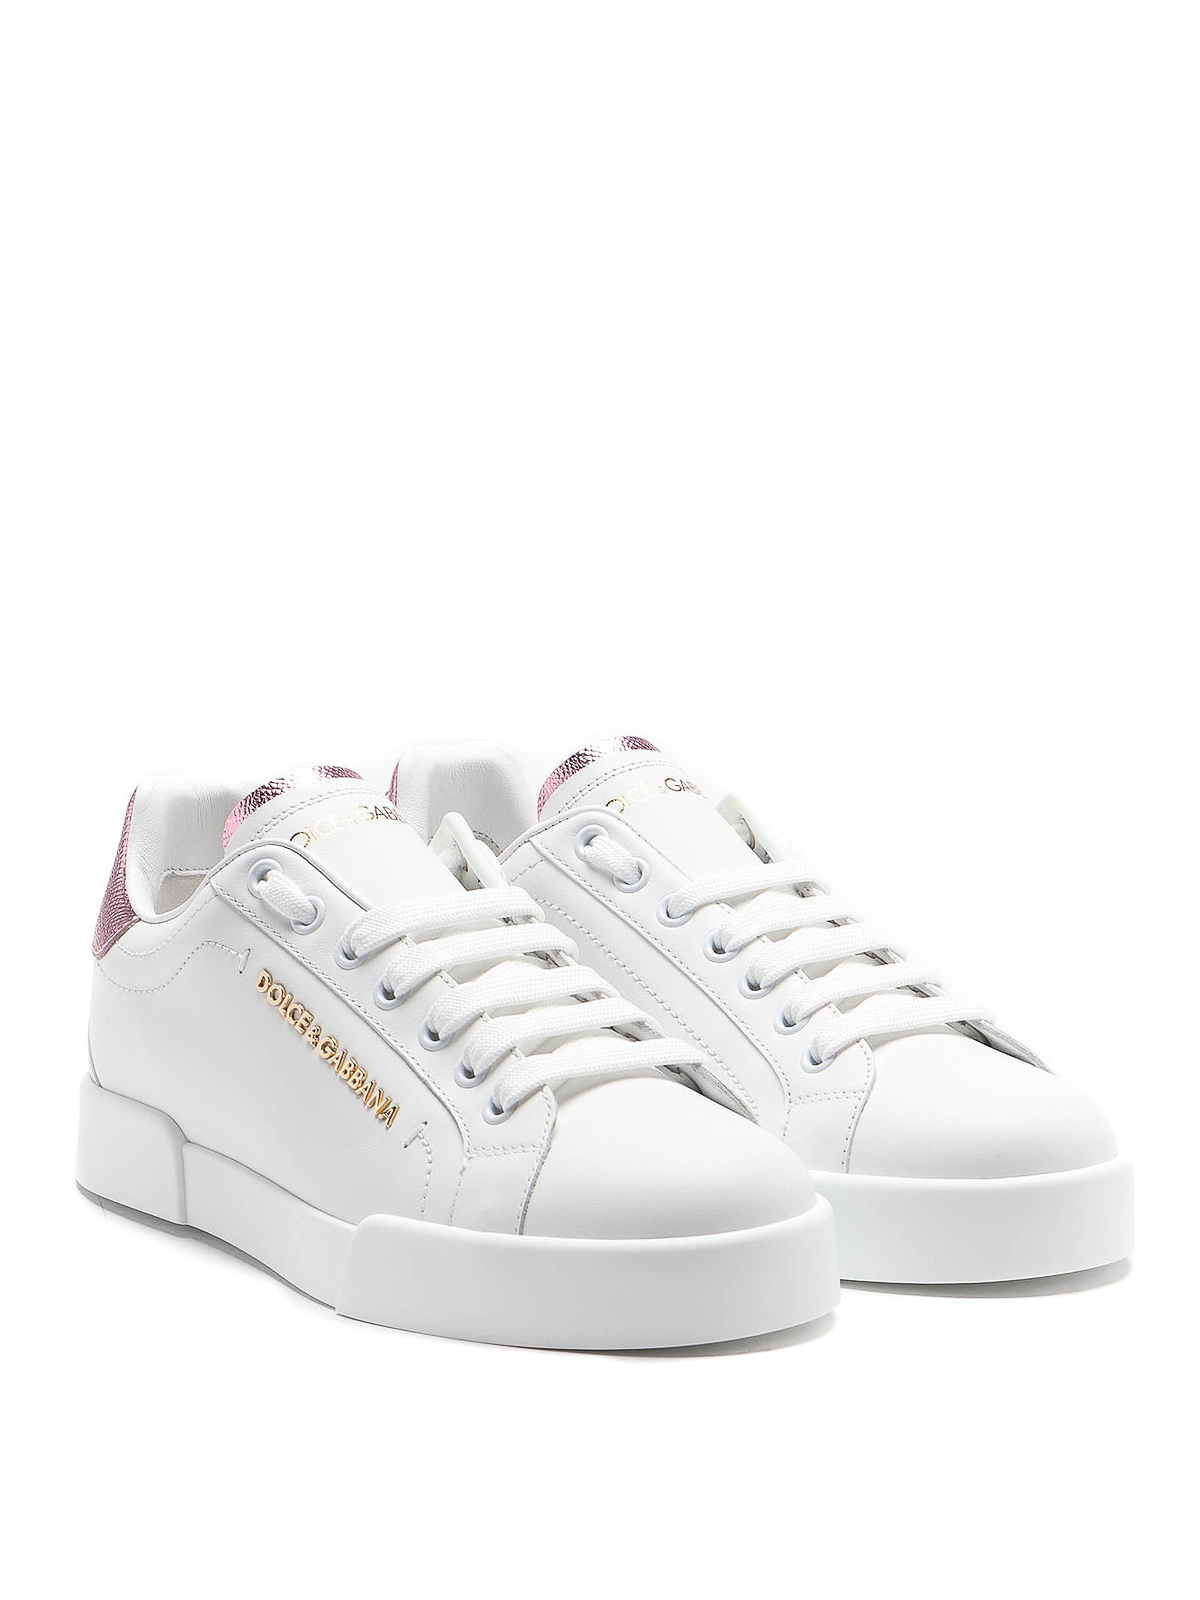 Shop Dolce & Gabbana Portofino Maxi Pearl White Leather Sneakers In Blanco